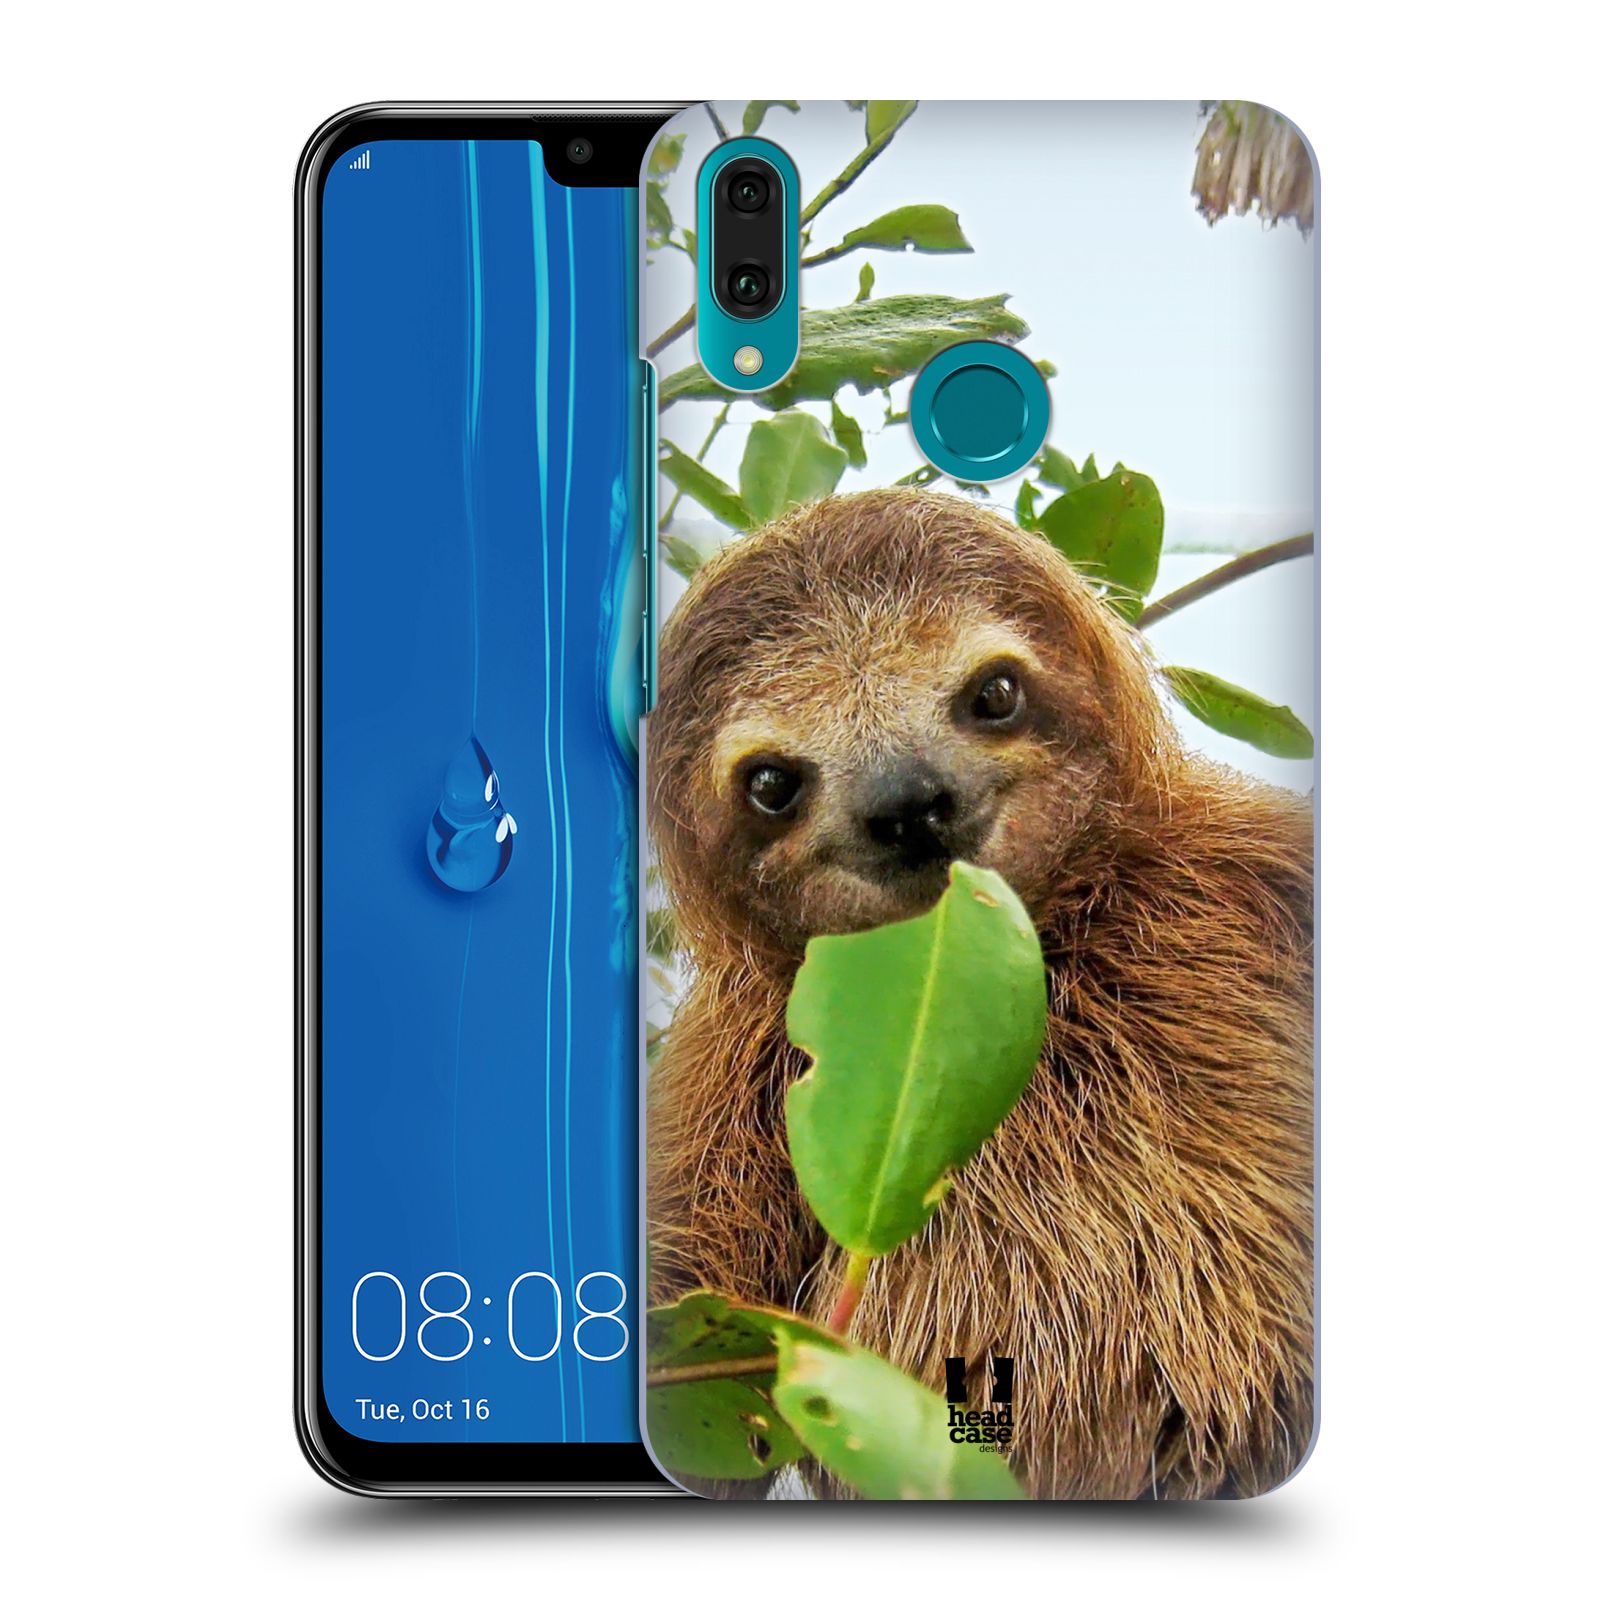 Pouzdro na mobil Huawei Y9 2019 - HEAD CASE - vzor slavná zvířata foto lenochod